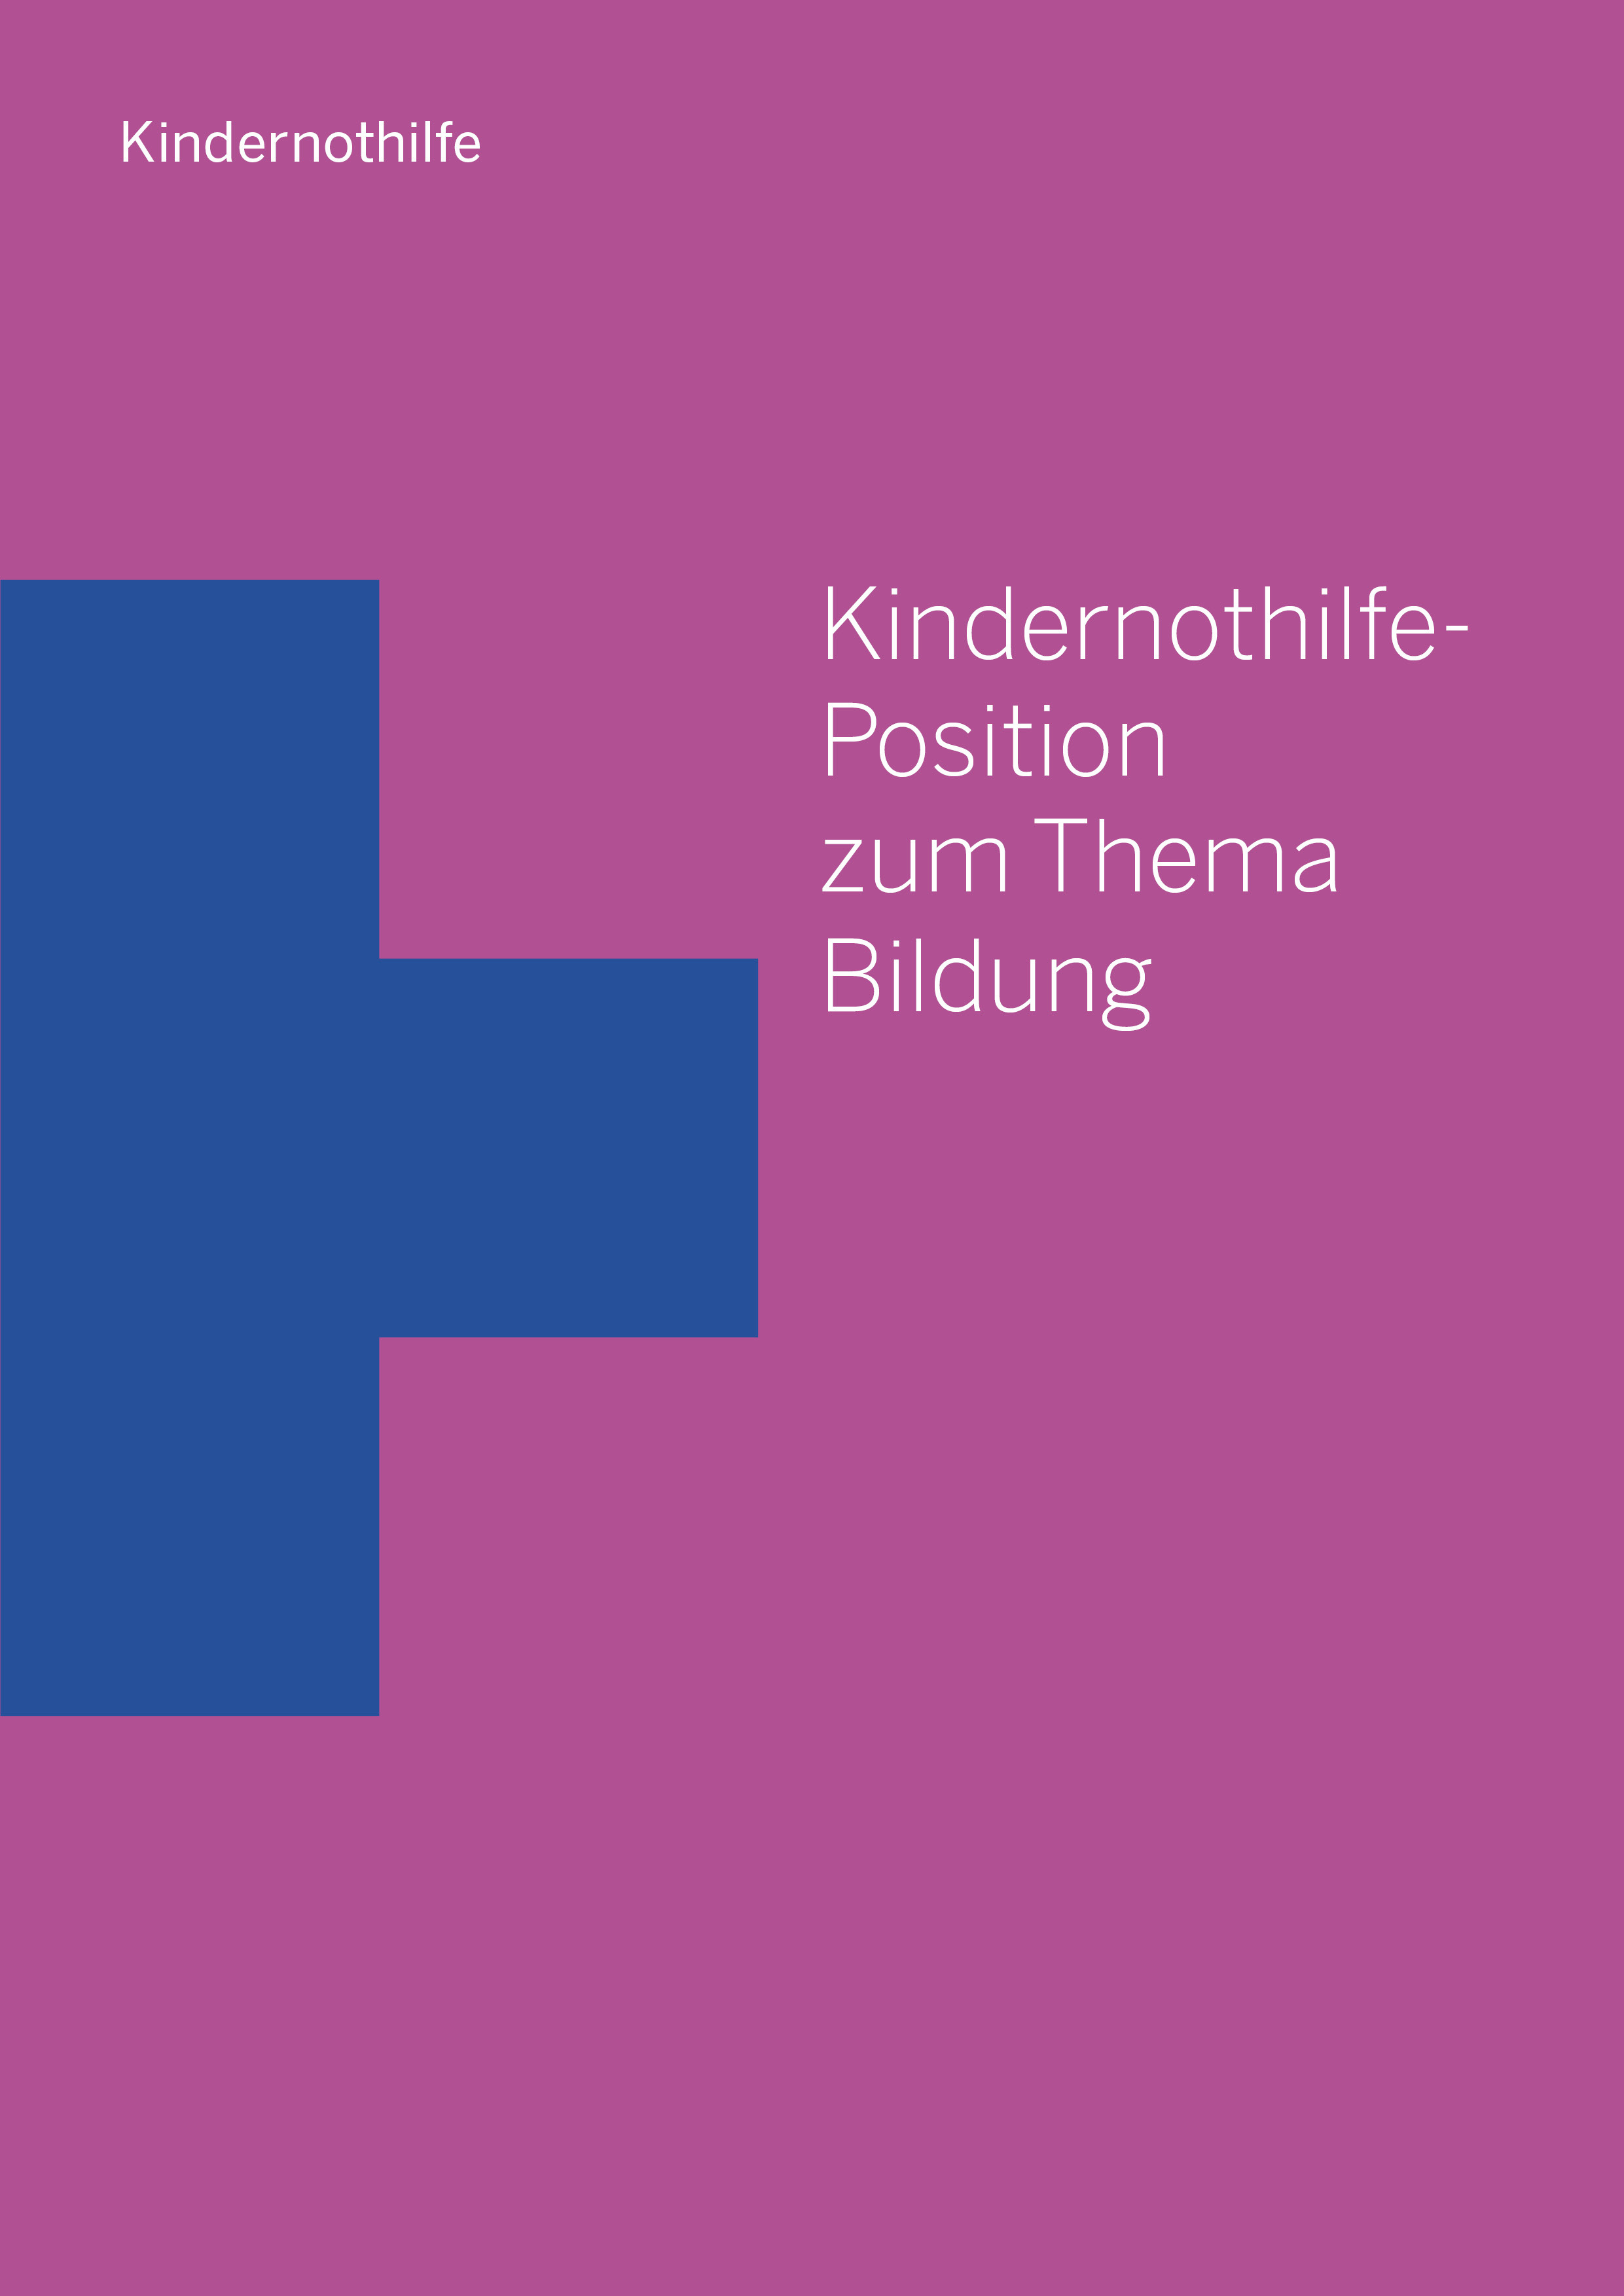 Cover-Bild des Positionspapiers Bildung: Kindernothilfe-Logo vor magentafarbenem Hintergrund